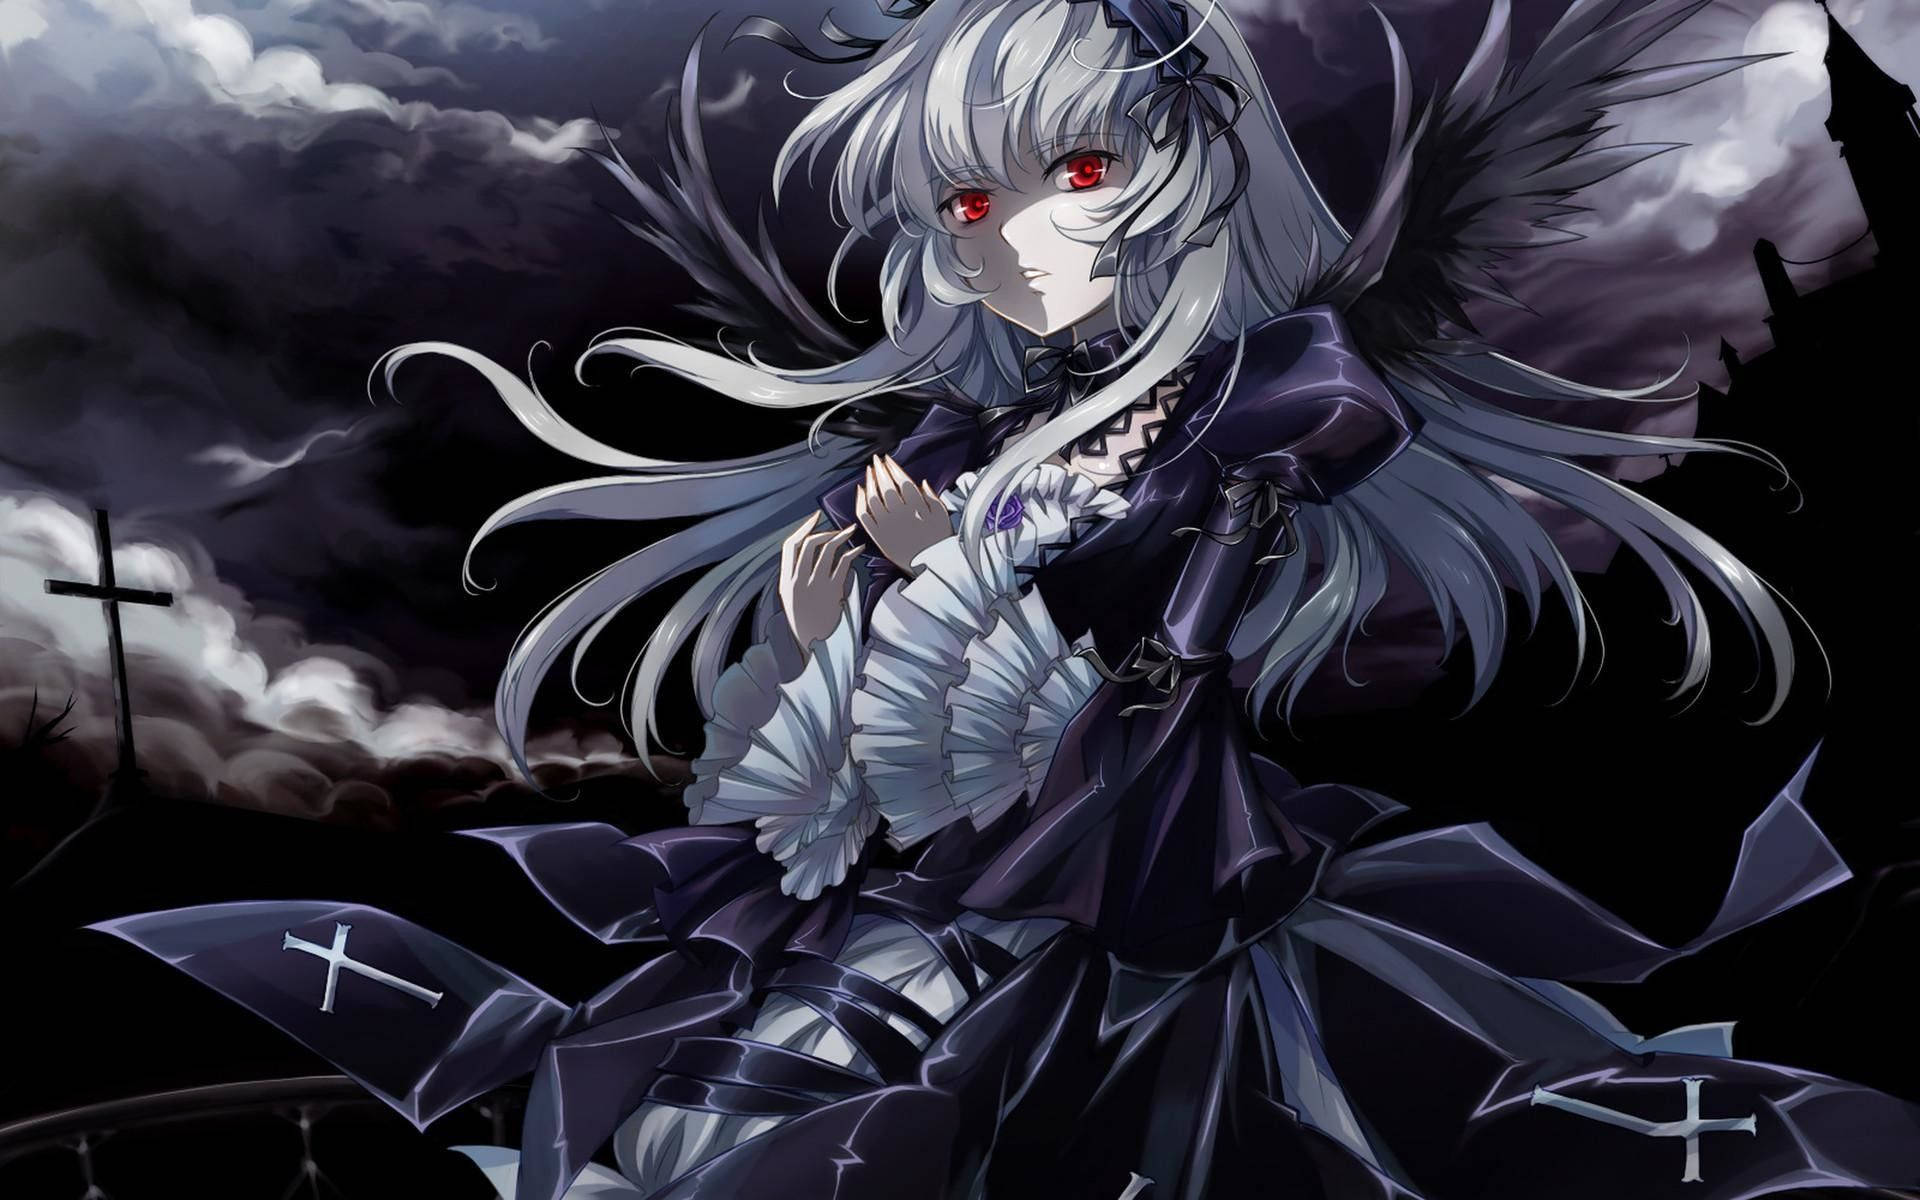 Dark Gothic Rozen Maiden Suigintou Background